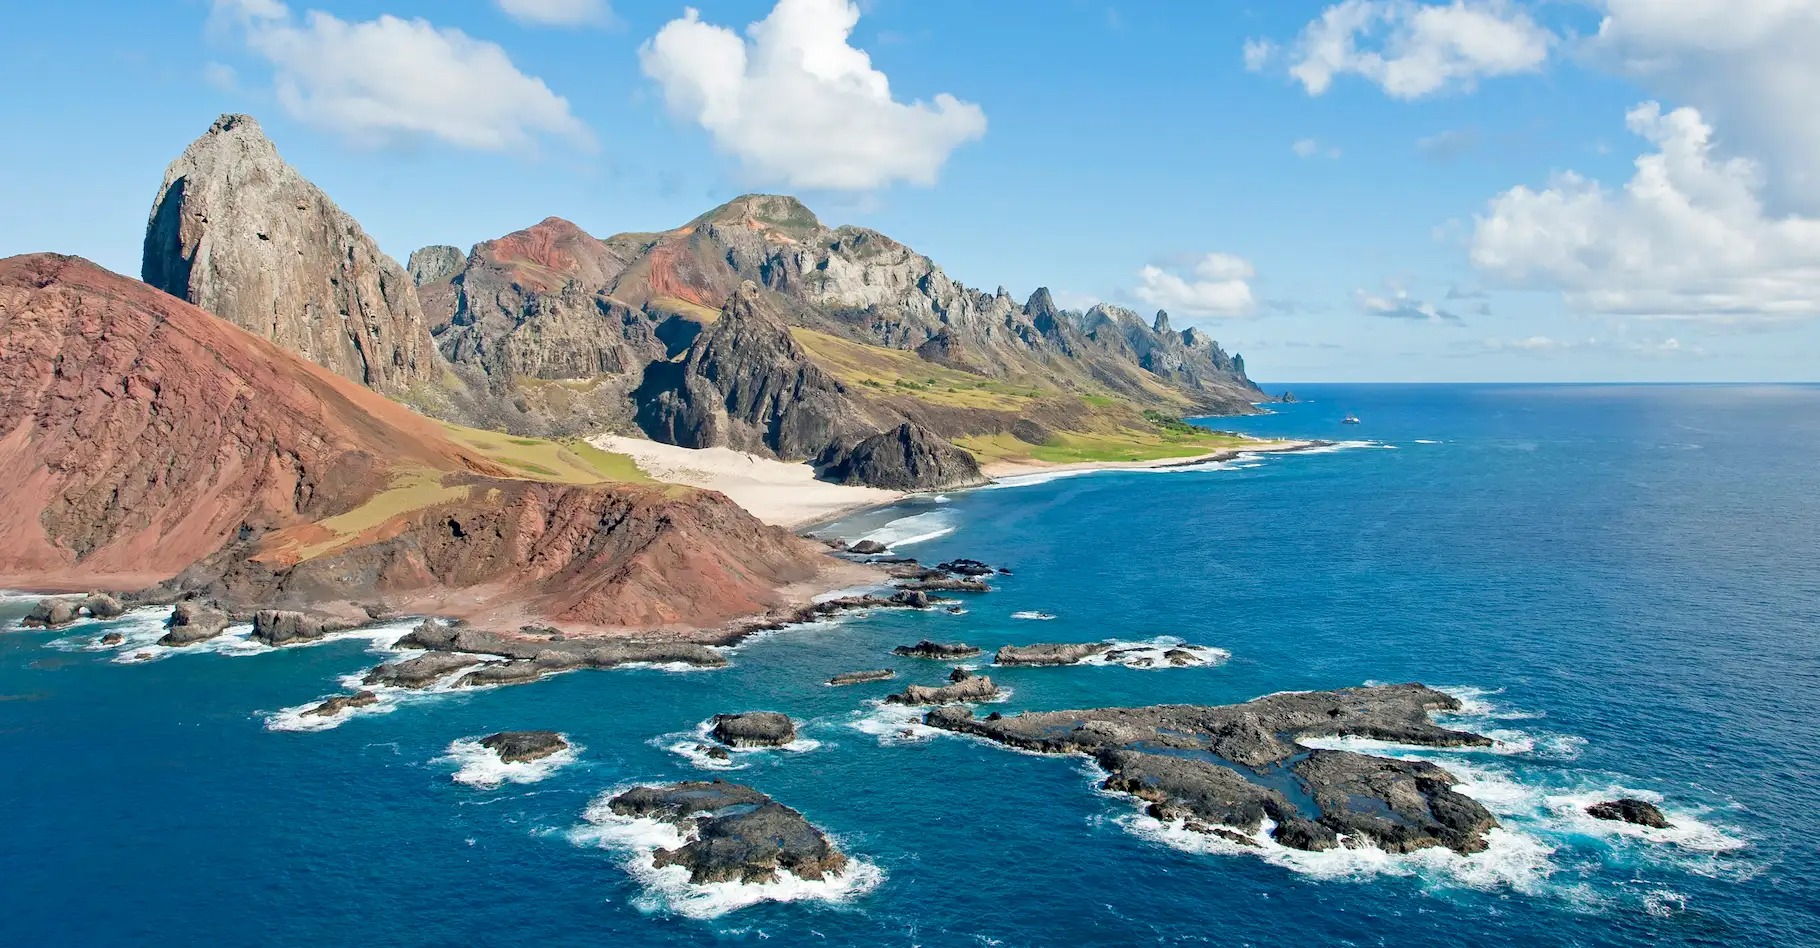 roche plastique ile trindade - Auf der abgeschiedenen Insel Trindade wurden aus Plastik bestehende Felsen entdeckt.